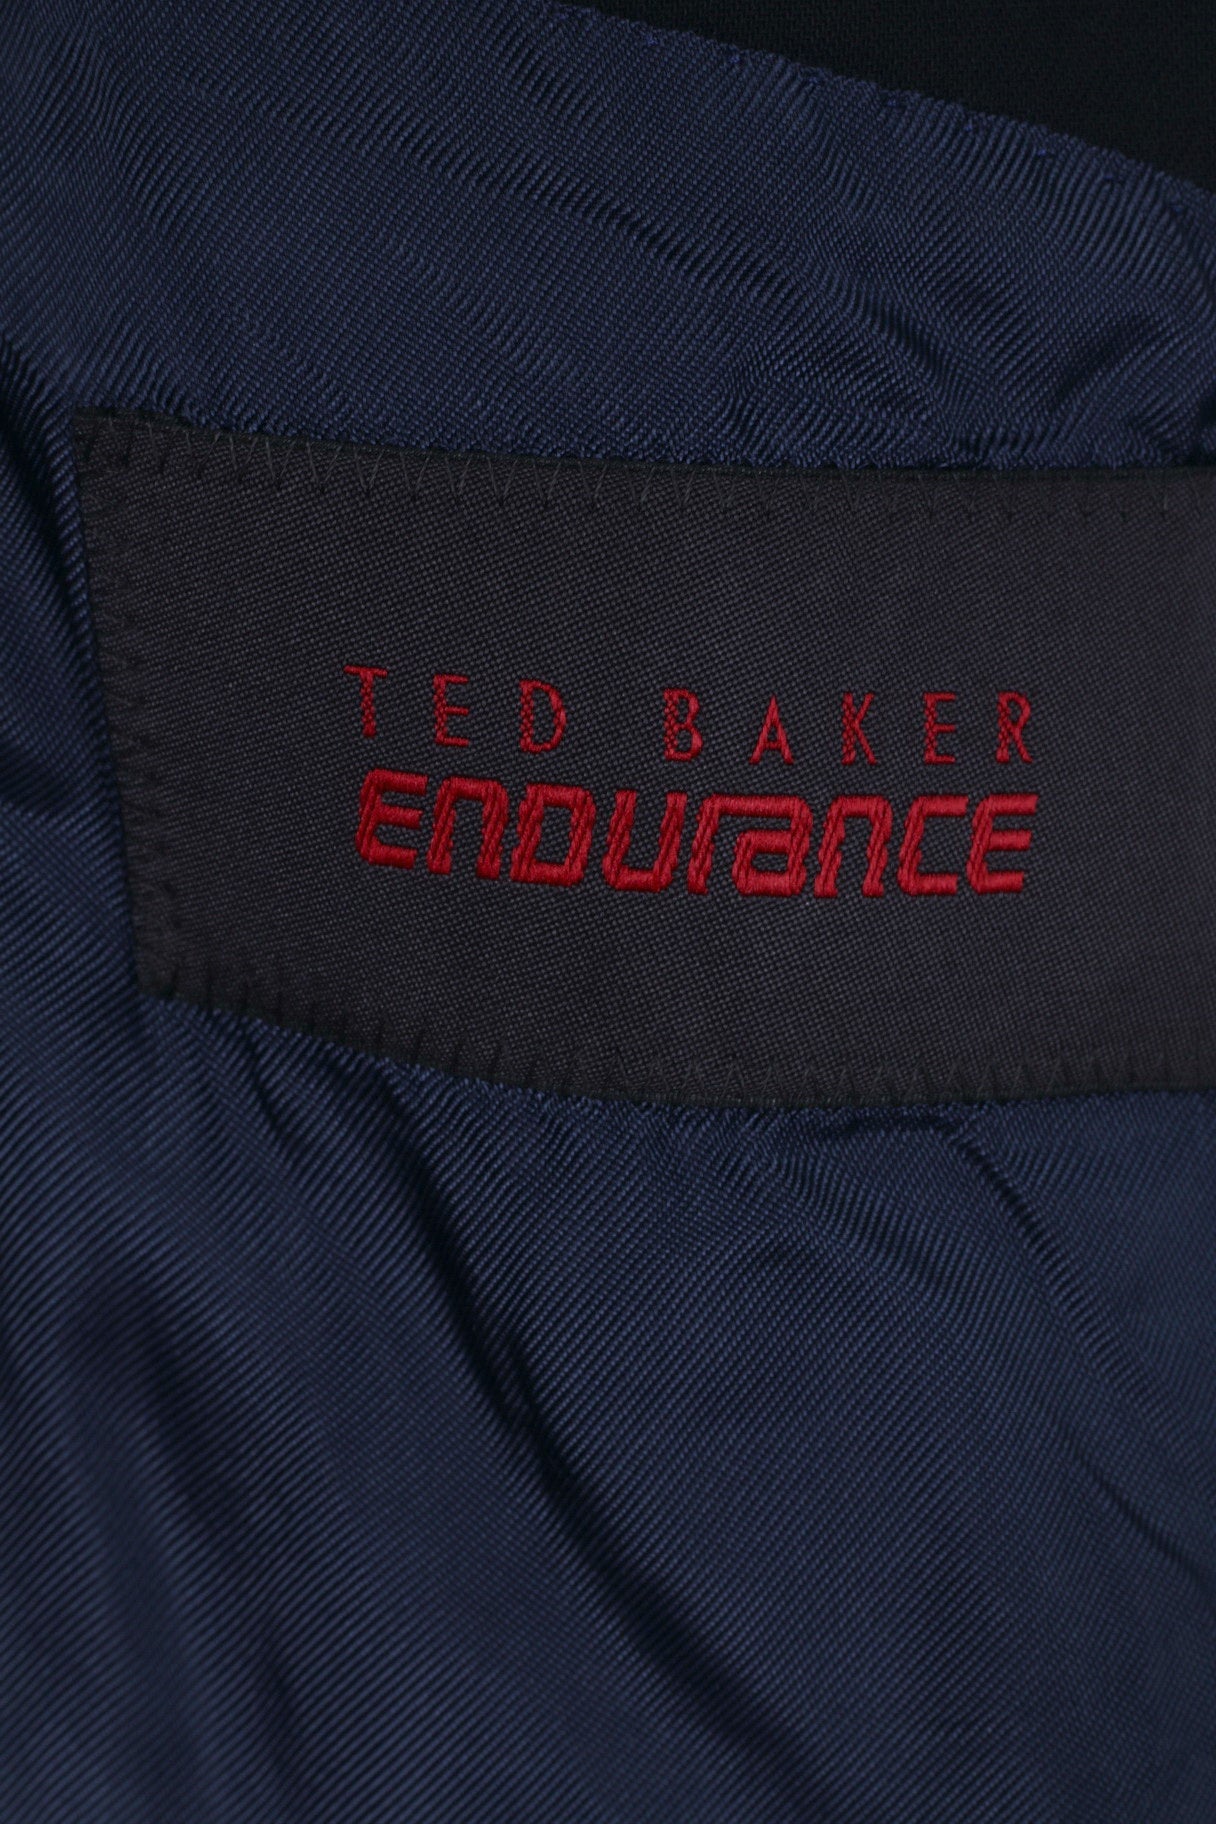 Ted Baker Endurance Mens 42 R Blazer Jacket Single Breasted Navy Wool Shoulder Pads